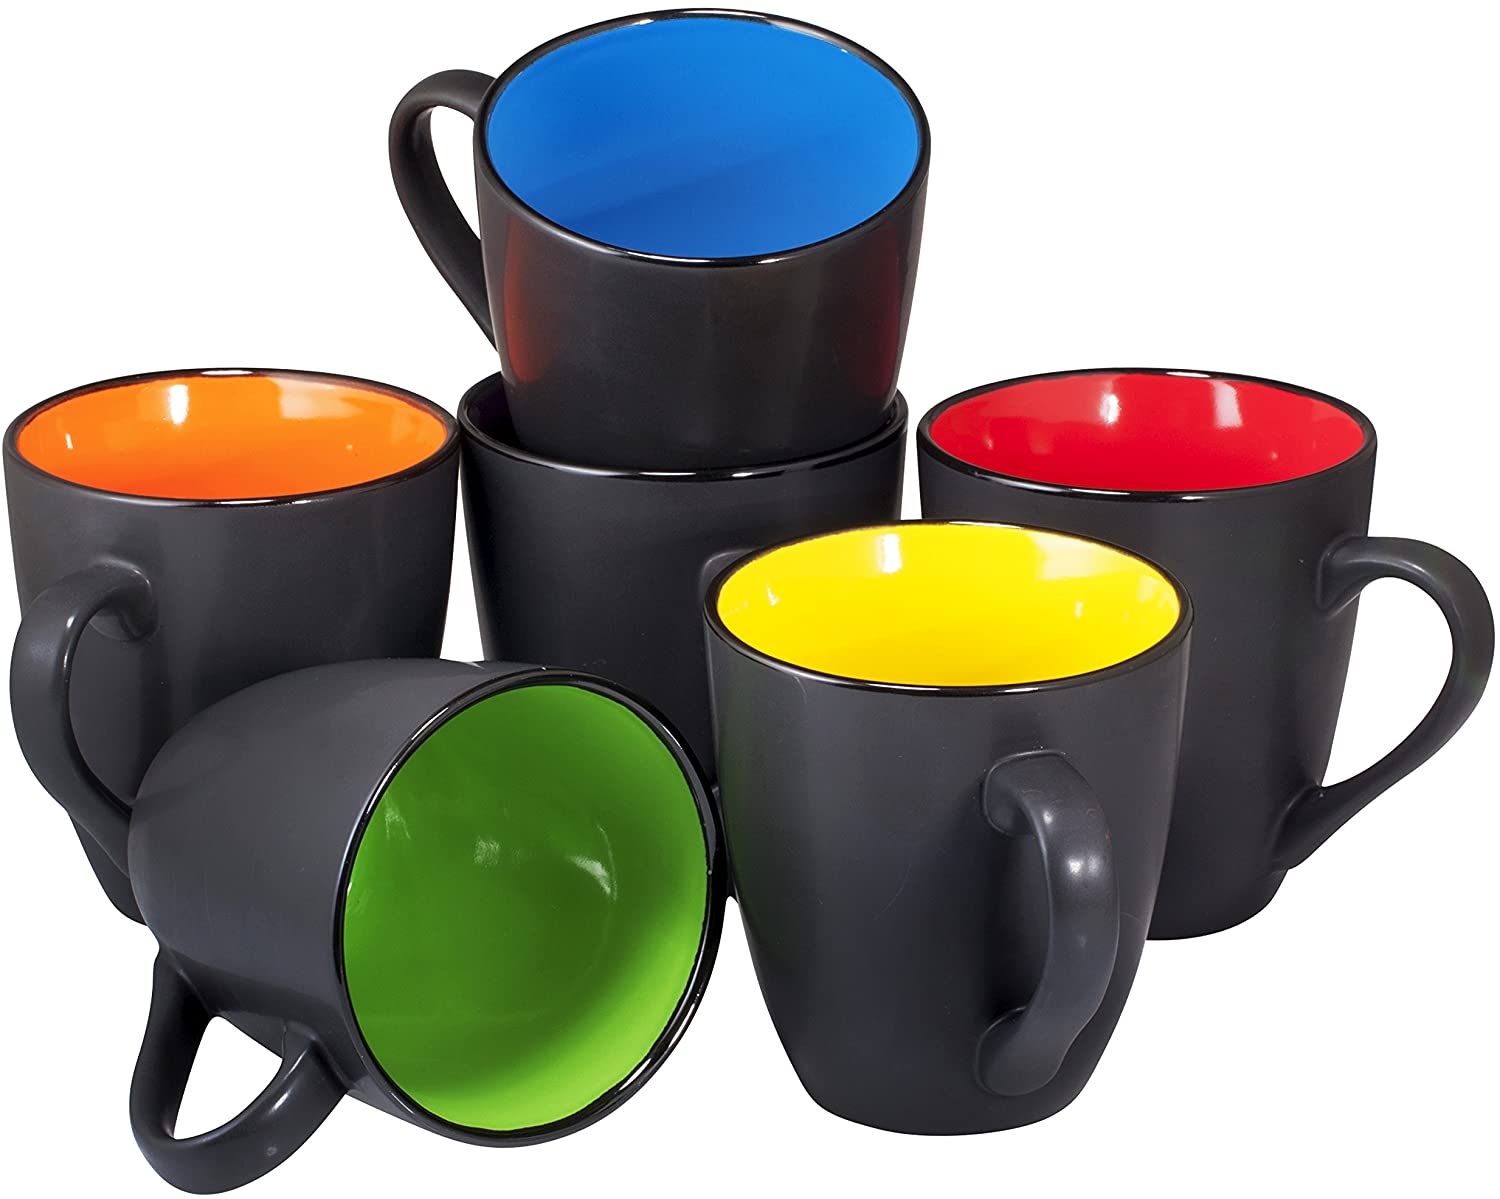 https://www.dontwasteyourmoney.com/wp-content/uploads/2021/08/bruntmor-ceramic-16-ounce-coffee-mug-set-6-piece-coffee-mug-sets.jpg